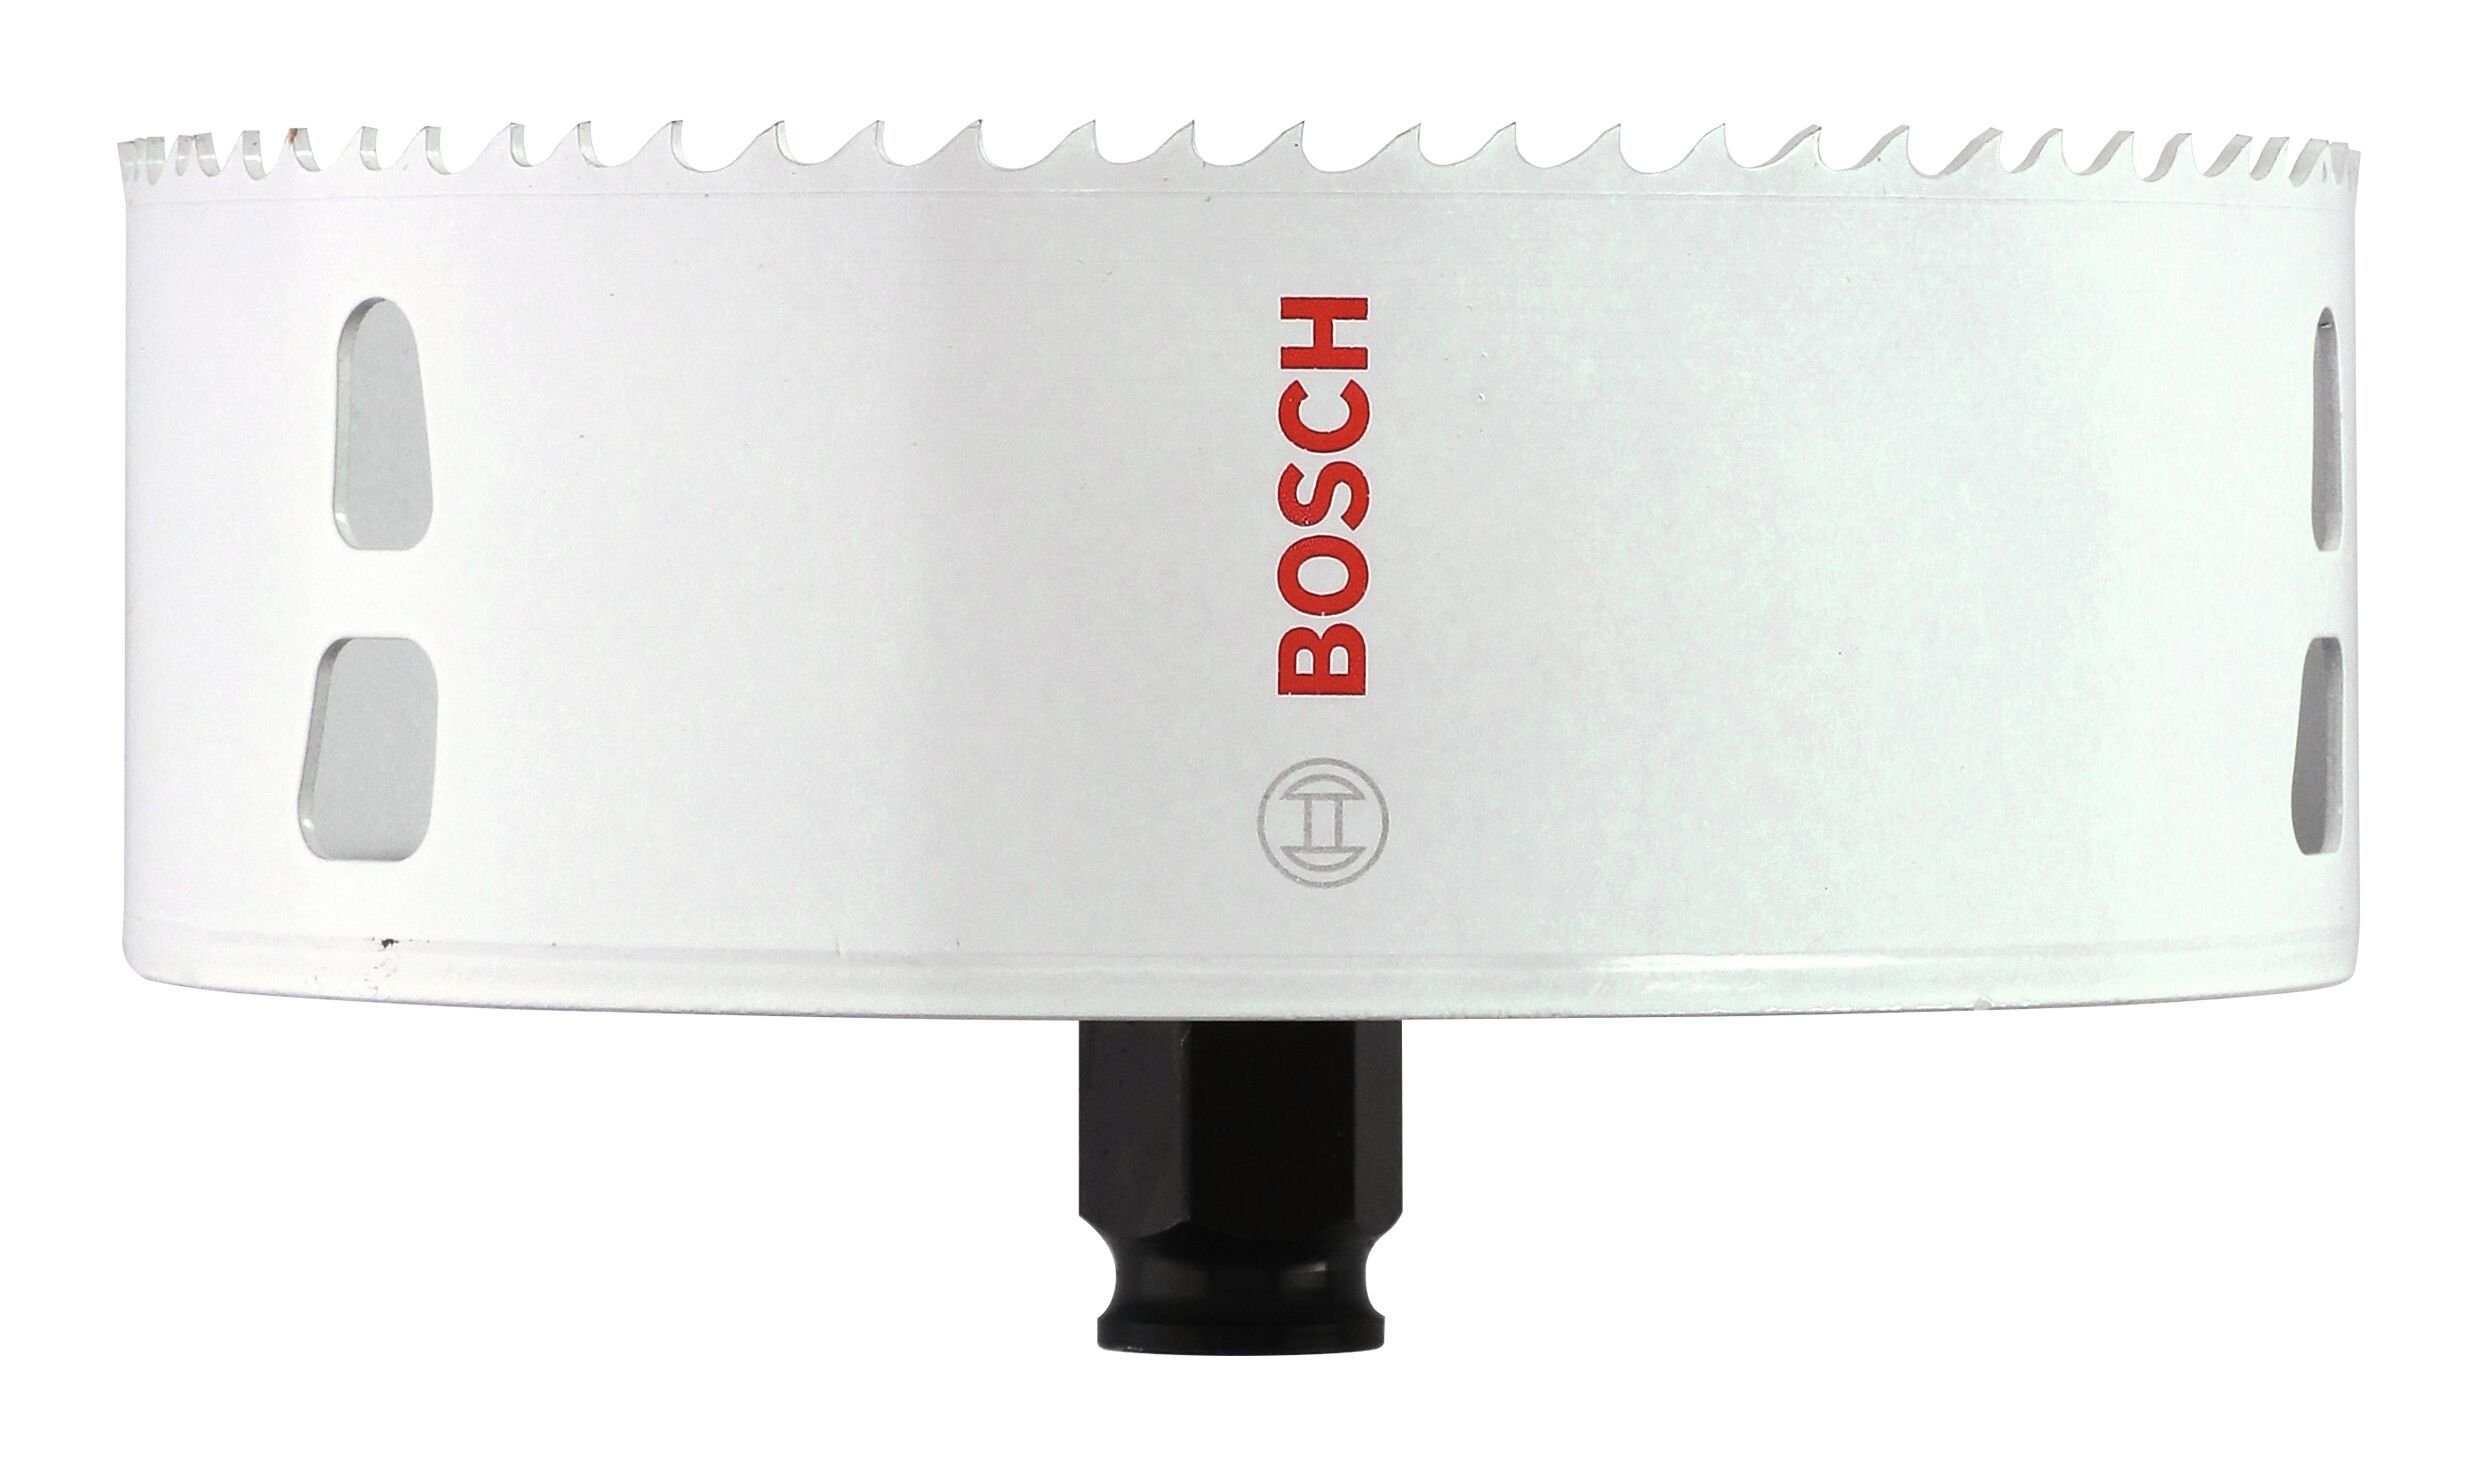 BOSCH and Ø for Wood mm, Metal Lochsäge, Accessories Progressor 133 Bosch